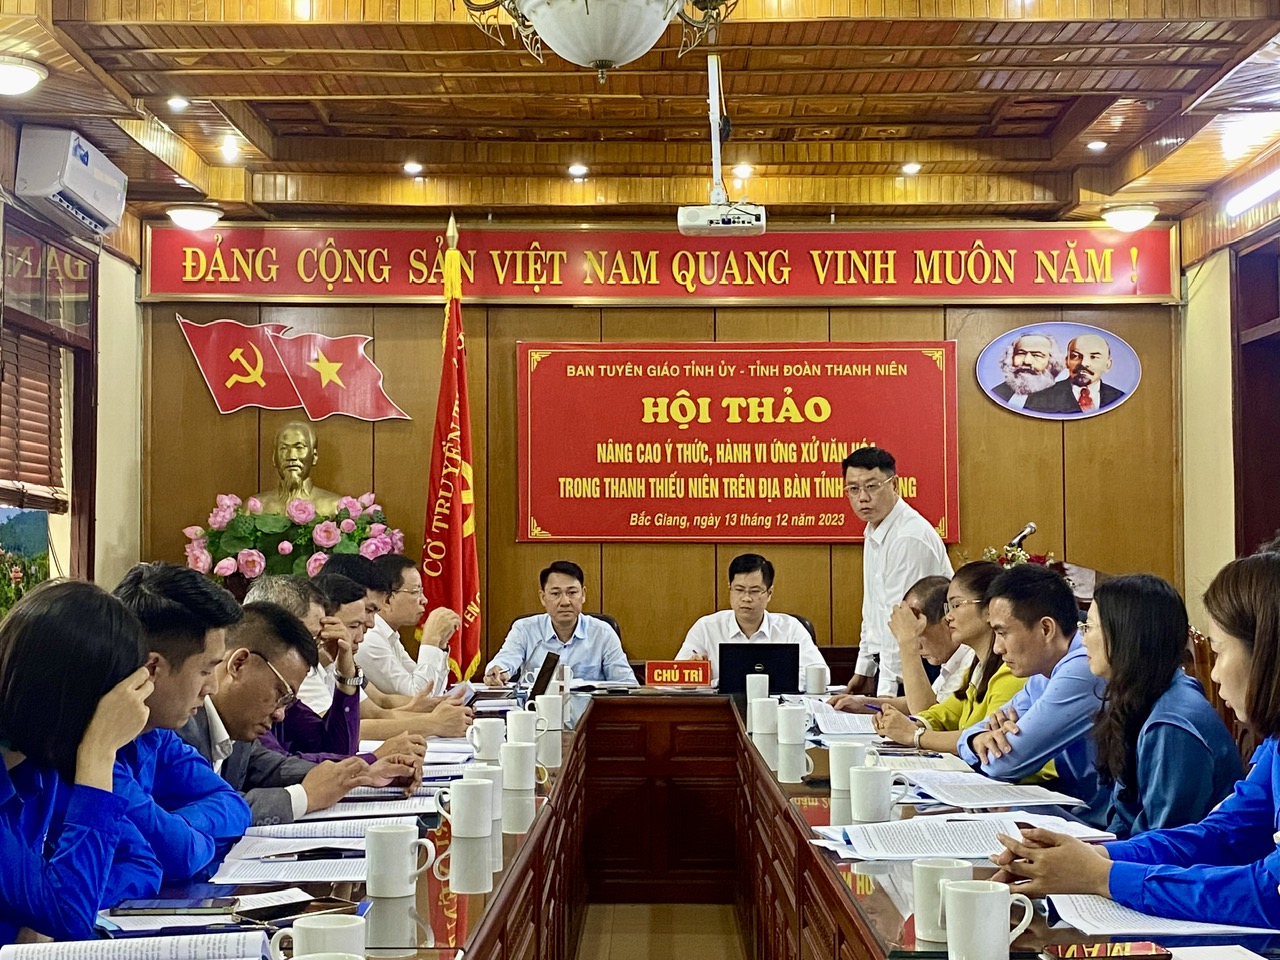 Nâng cao ý thức và hành vi ứng xử văn hóa trong thanh thiếu niên trên địa bàn tỉnh Bắc Giang